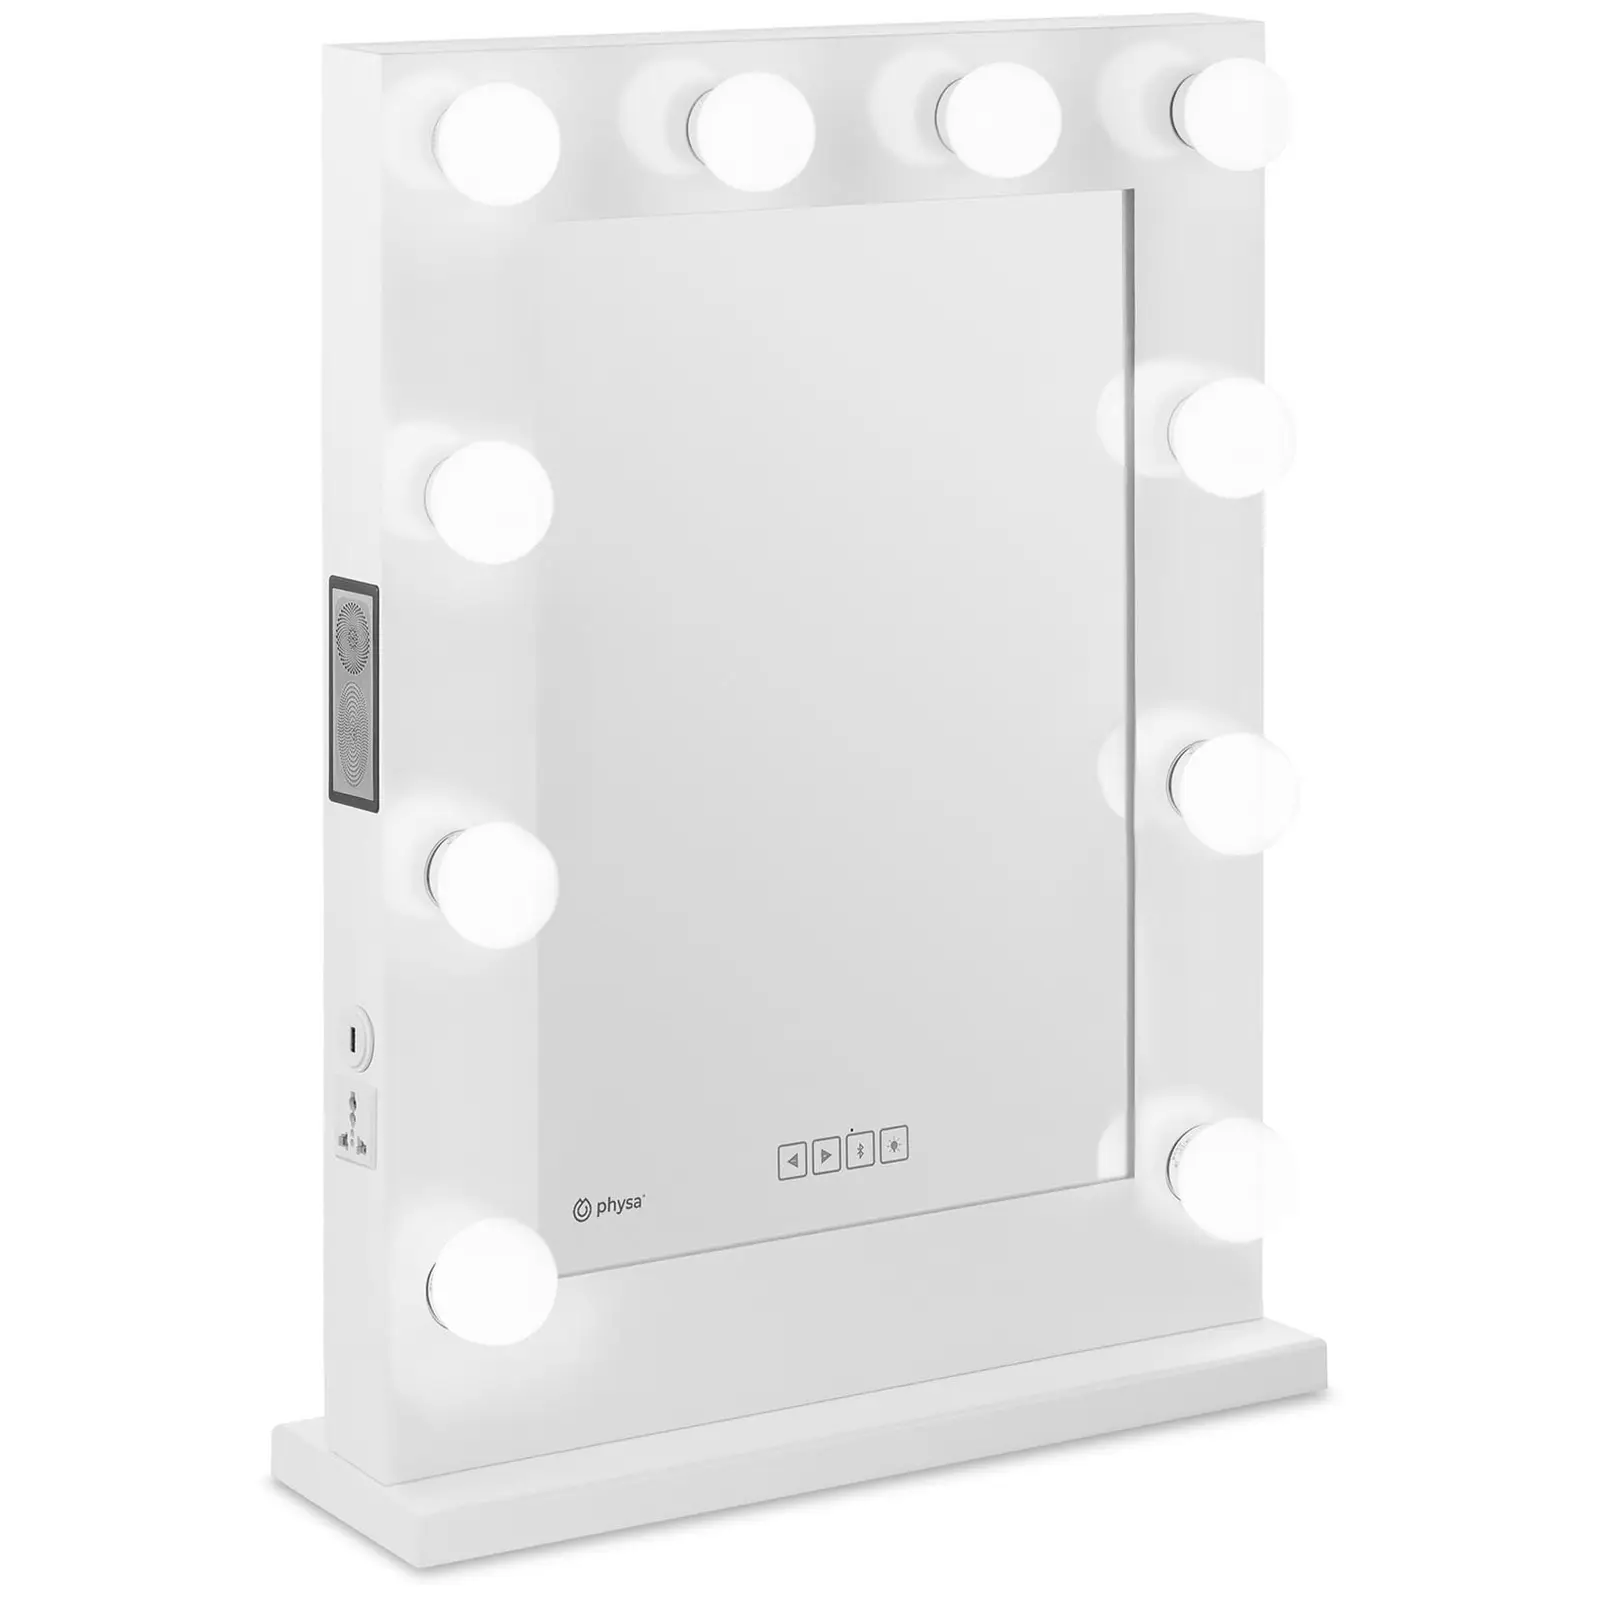 LED Vanity Mirror - white - 10 LEDs - square - speaker